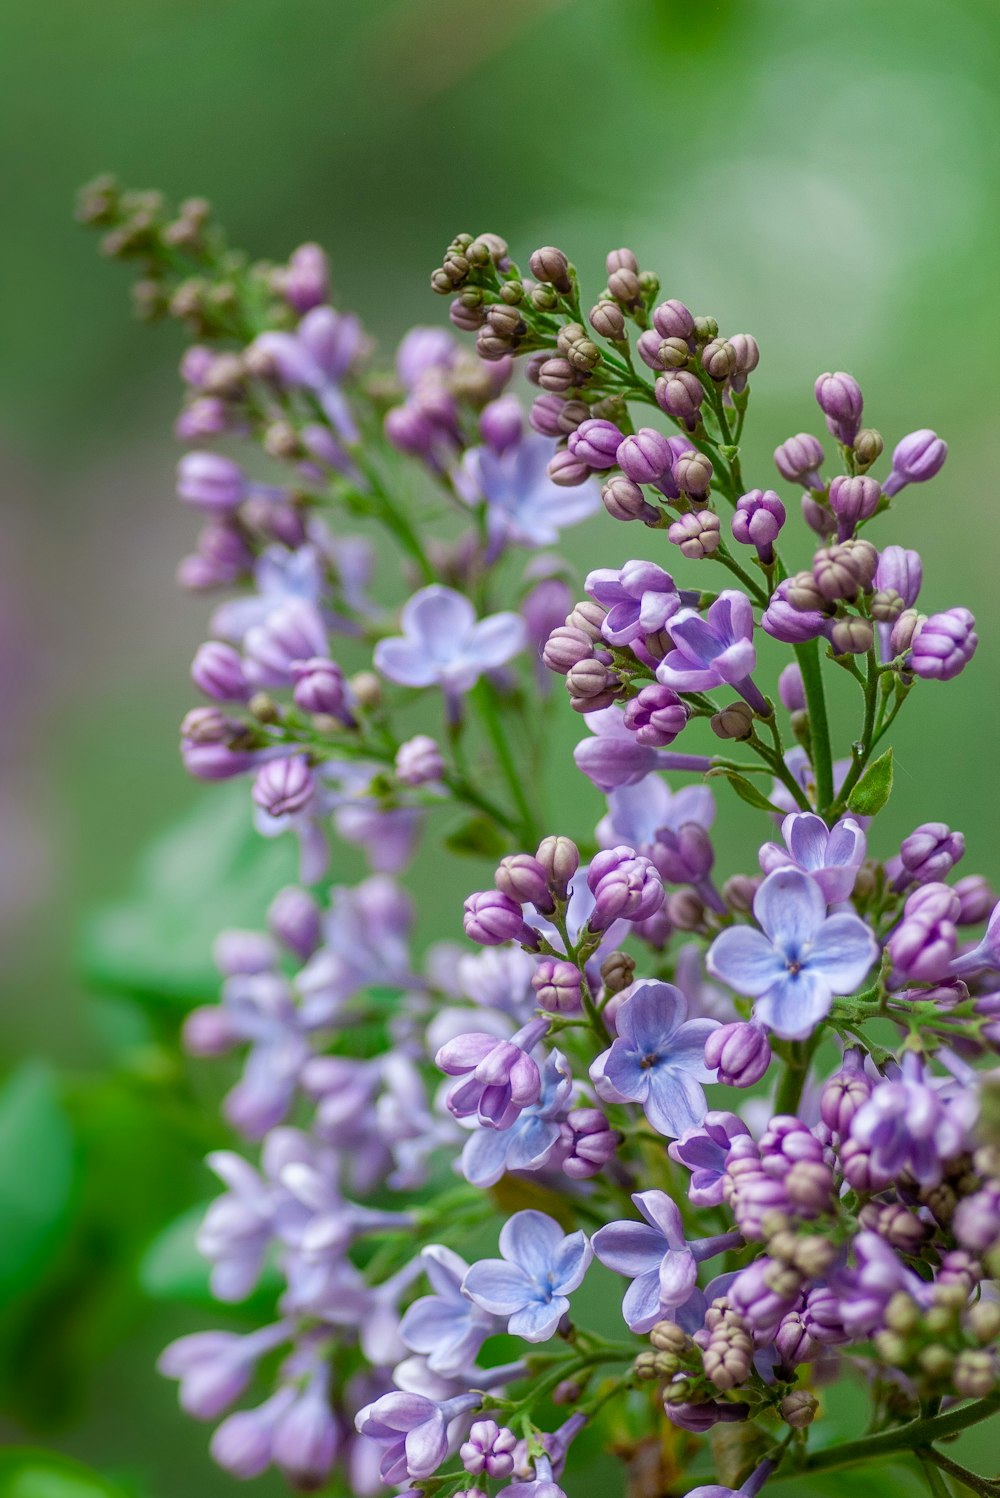 Bokeh-Fotografie einer grünblättrigen Pflanze mit violetten und blauen Blüten